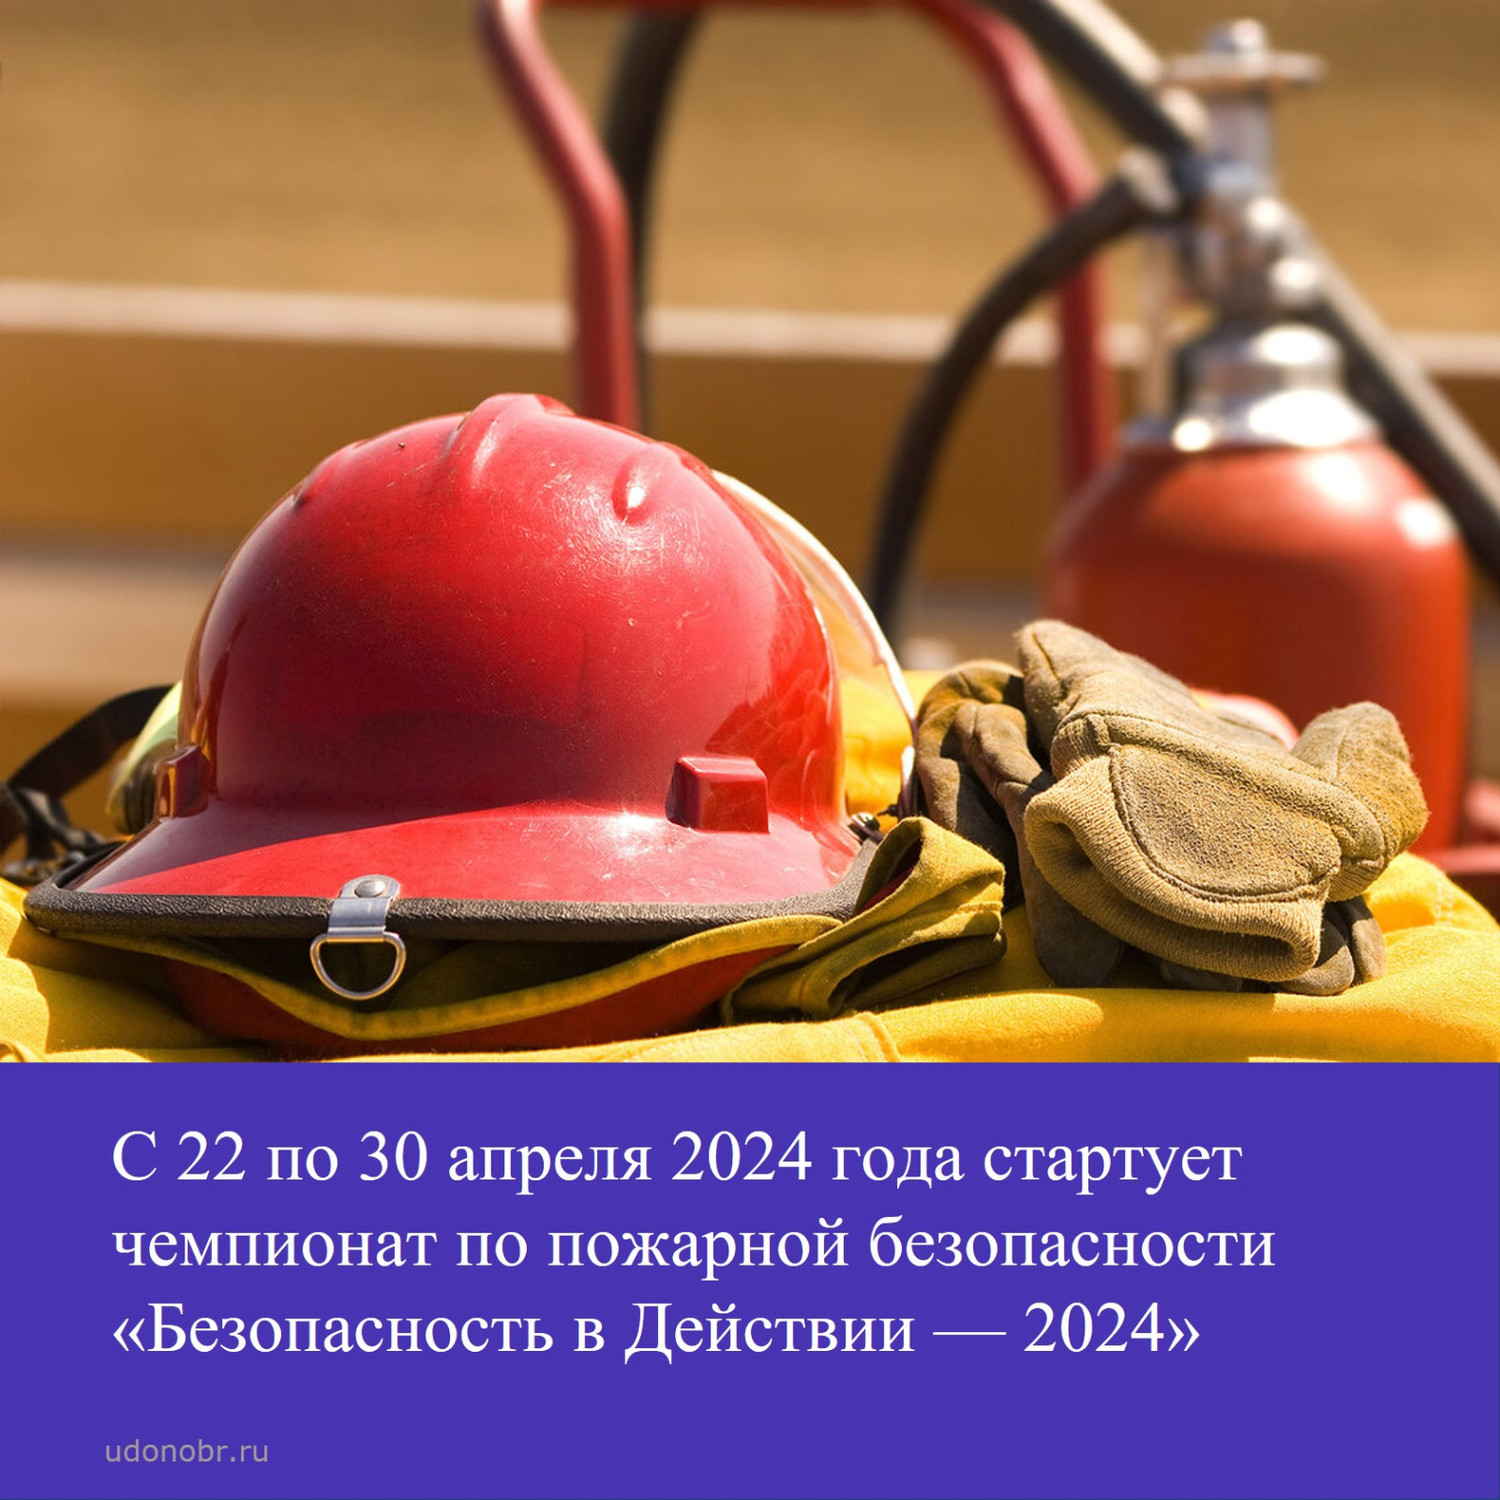 С 22 по 30 апреля 2024 года стартует чемпионат по пожарной безопасности «Безопасность в Действии — 2024»